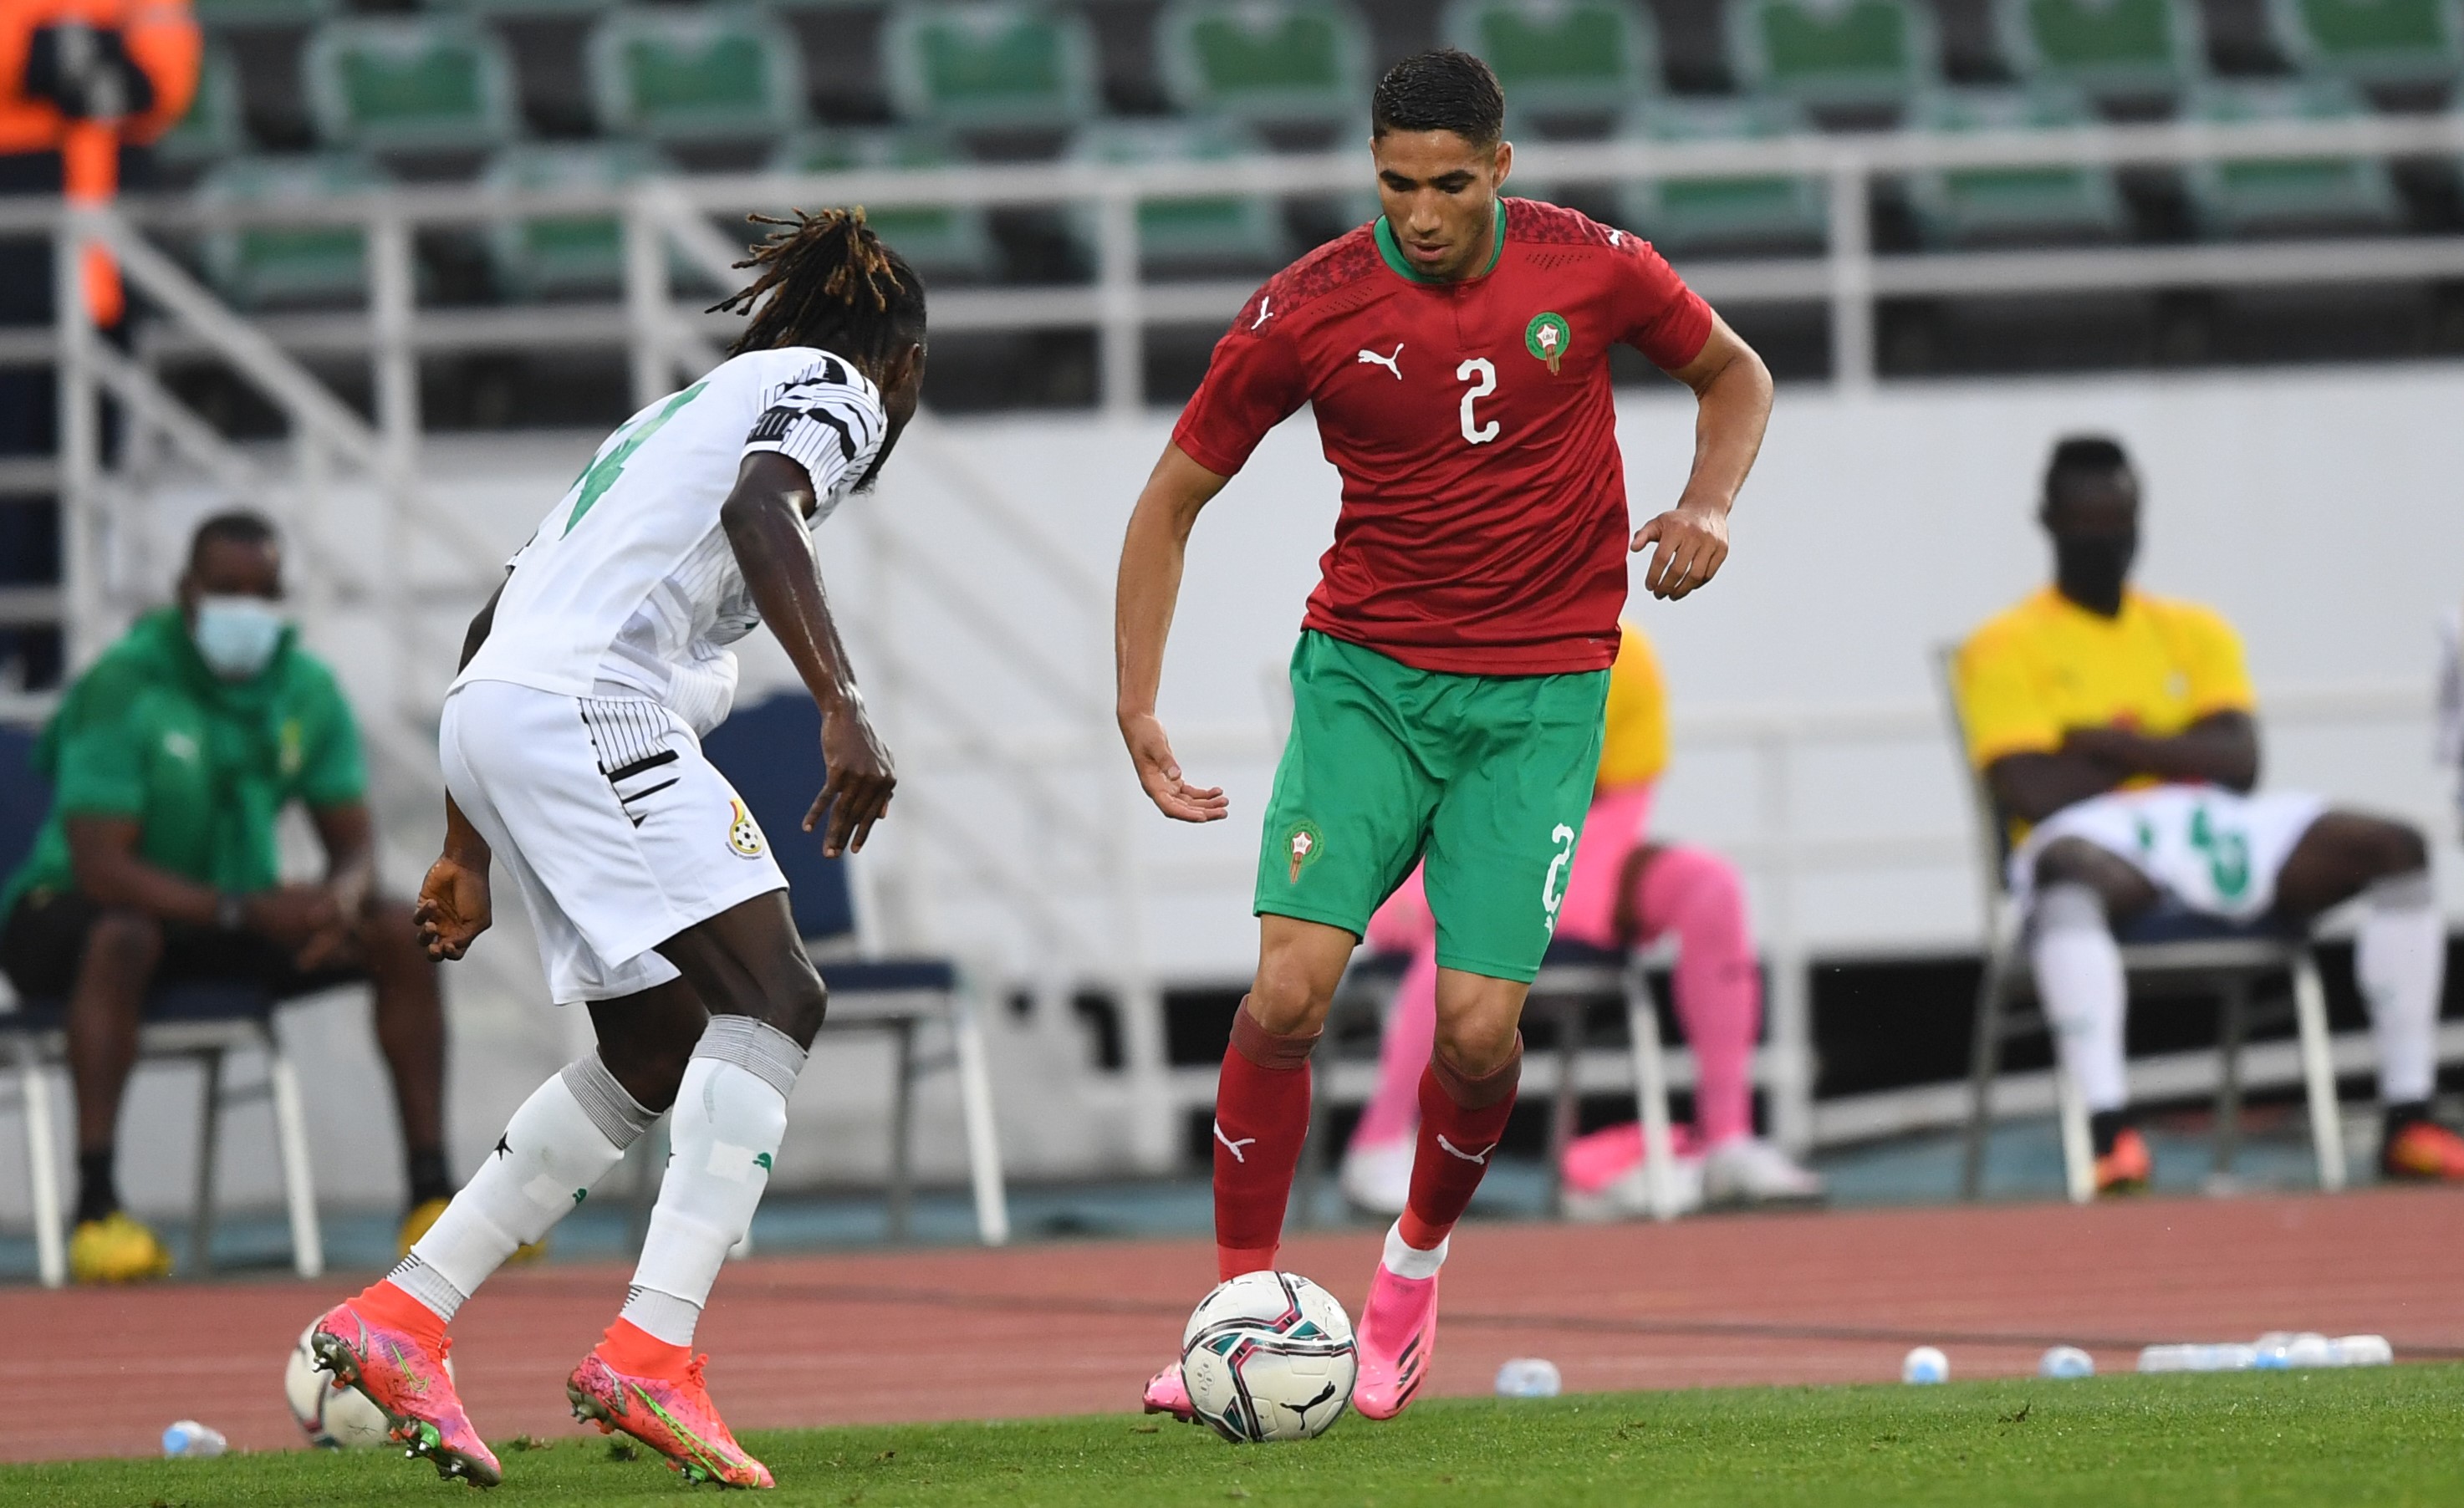 Maroc-Ghana (1-0) / Halilhodzic: « Une victoire difficile mais méritée ! »